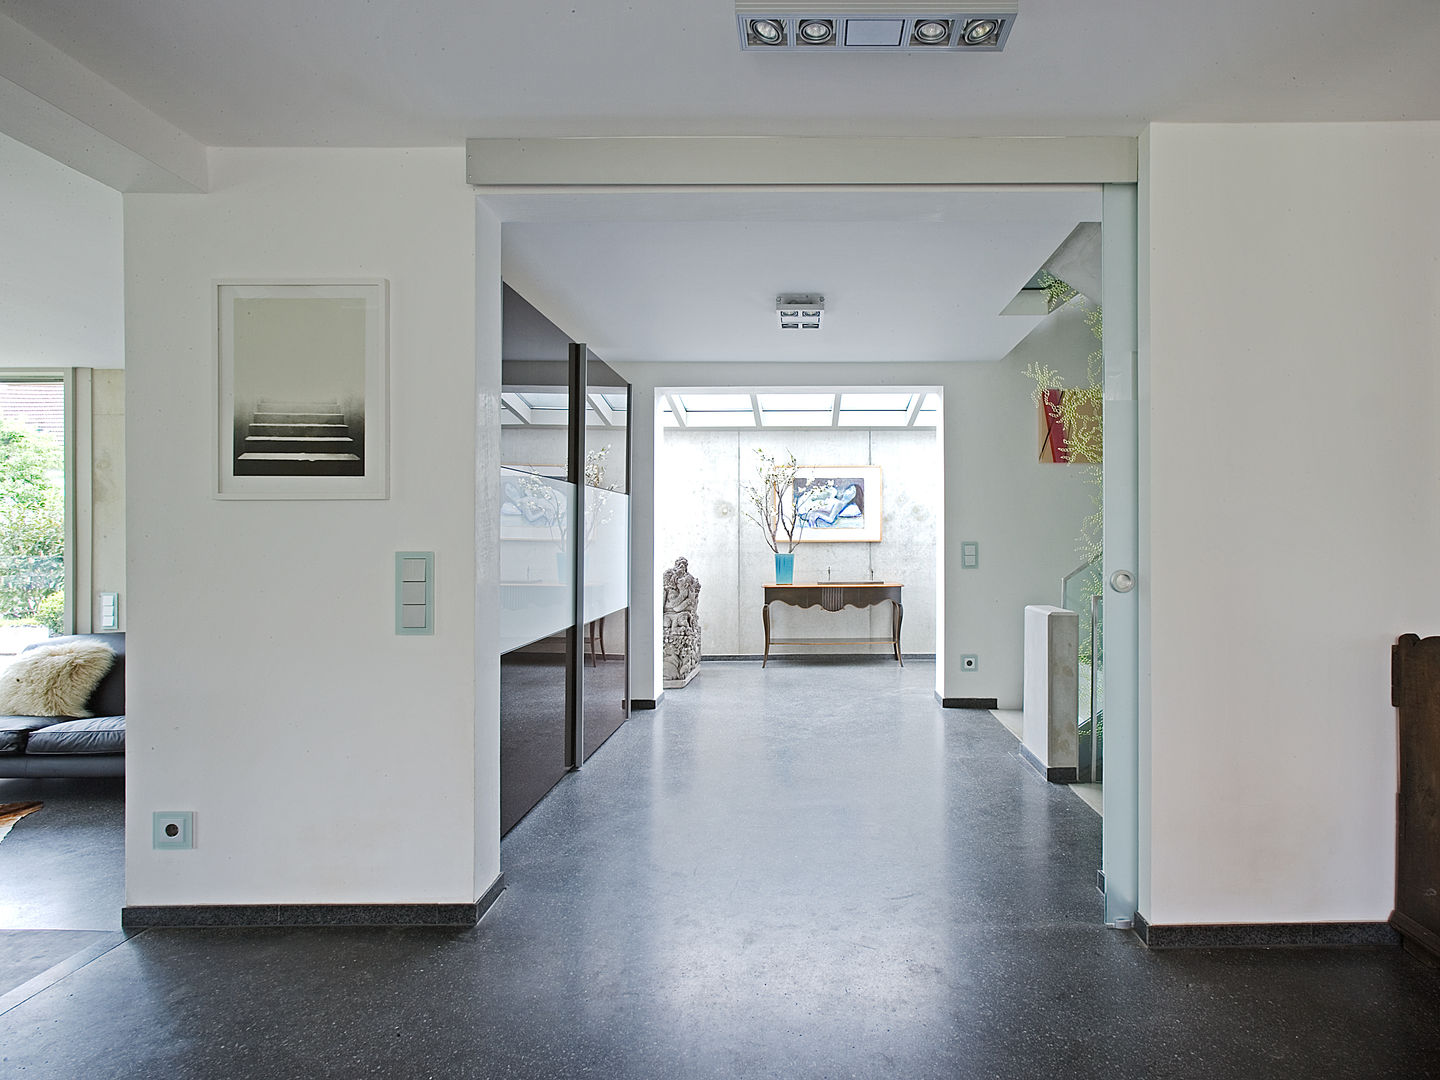 Wohnhaus M1 in Bad Boll , Gaus Architekten Gaus Architekten Pasillos, vestíbulos y escaleras modernos